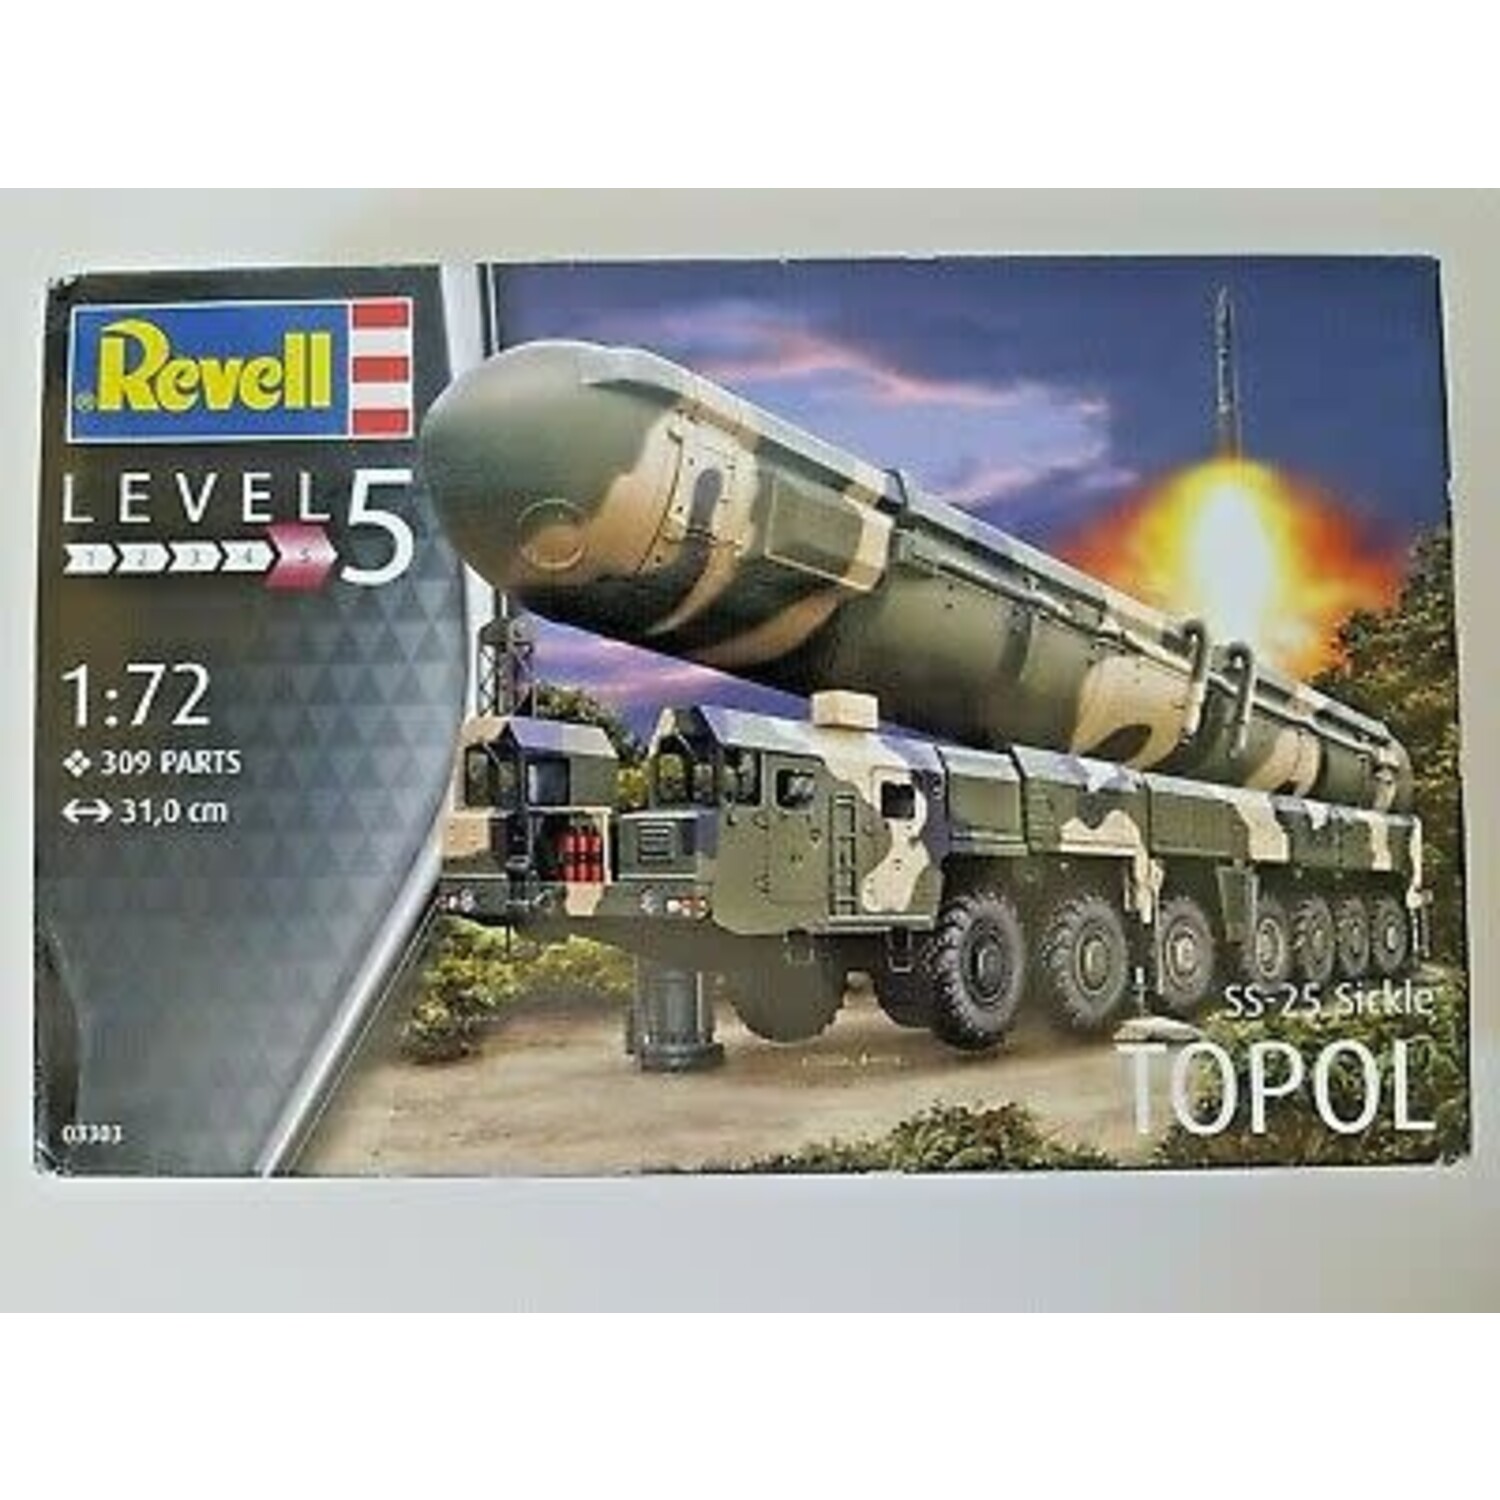 REVELL Revell 1/72 Topol SS-25 Sickle Missile Model Kit - www